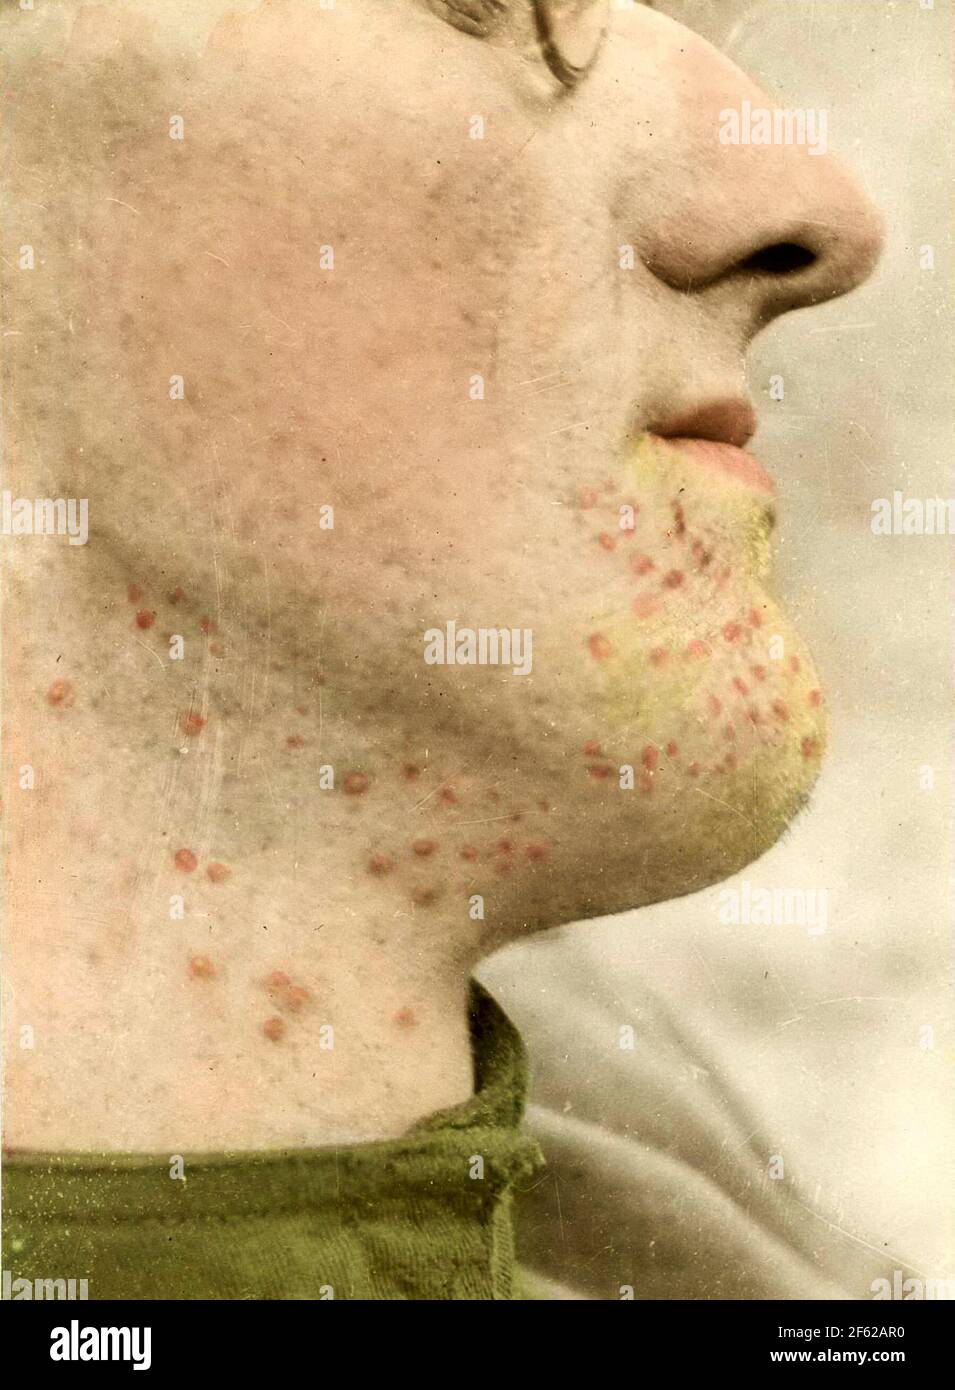 Dermatite da Mustard gas, prima guerra mondiale Foto Stock